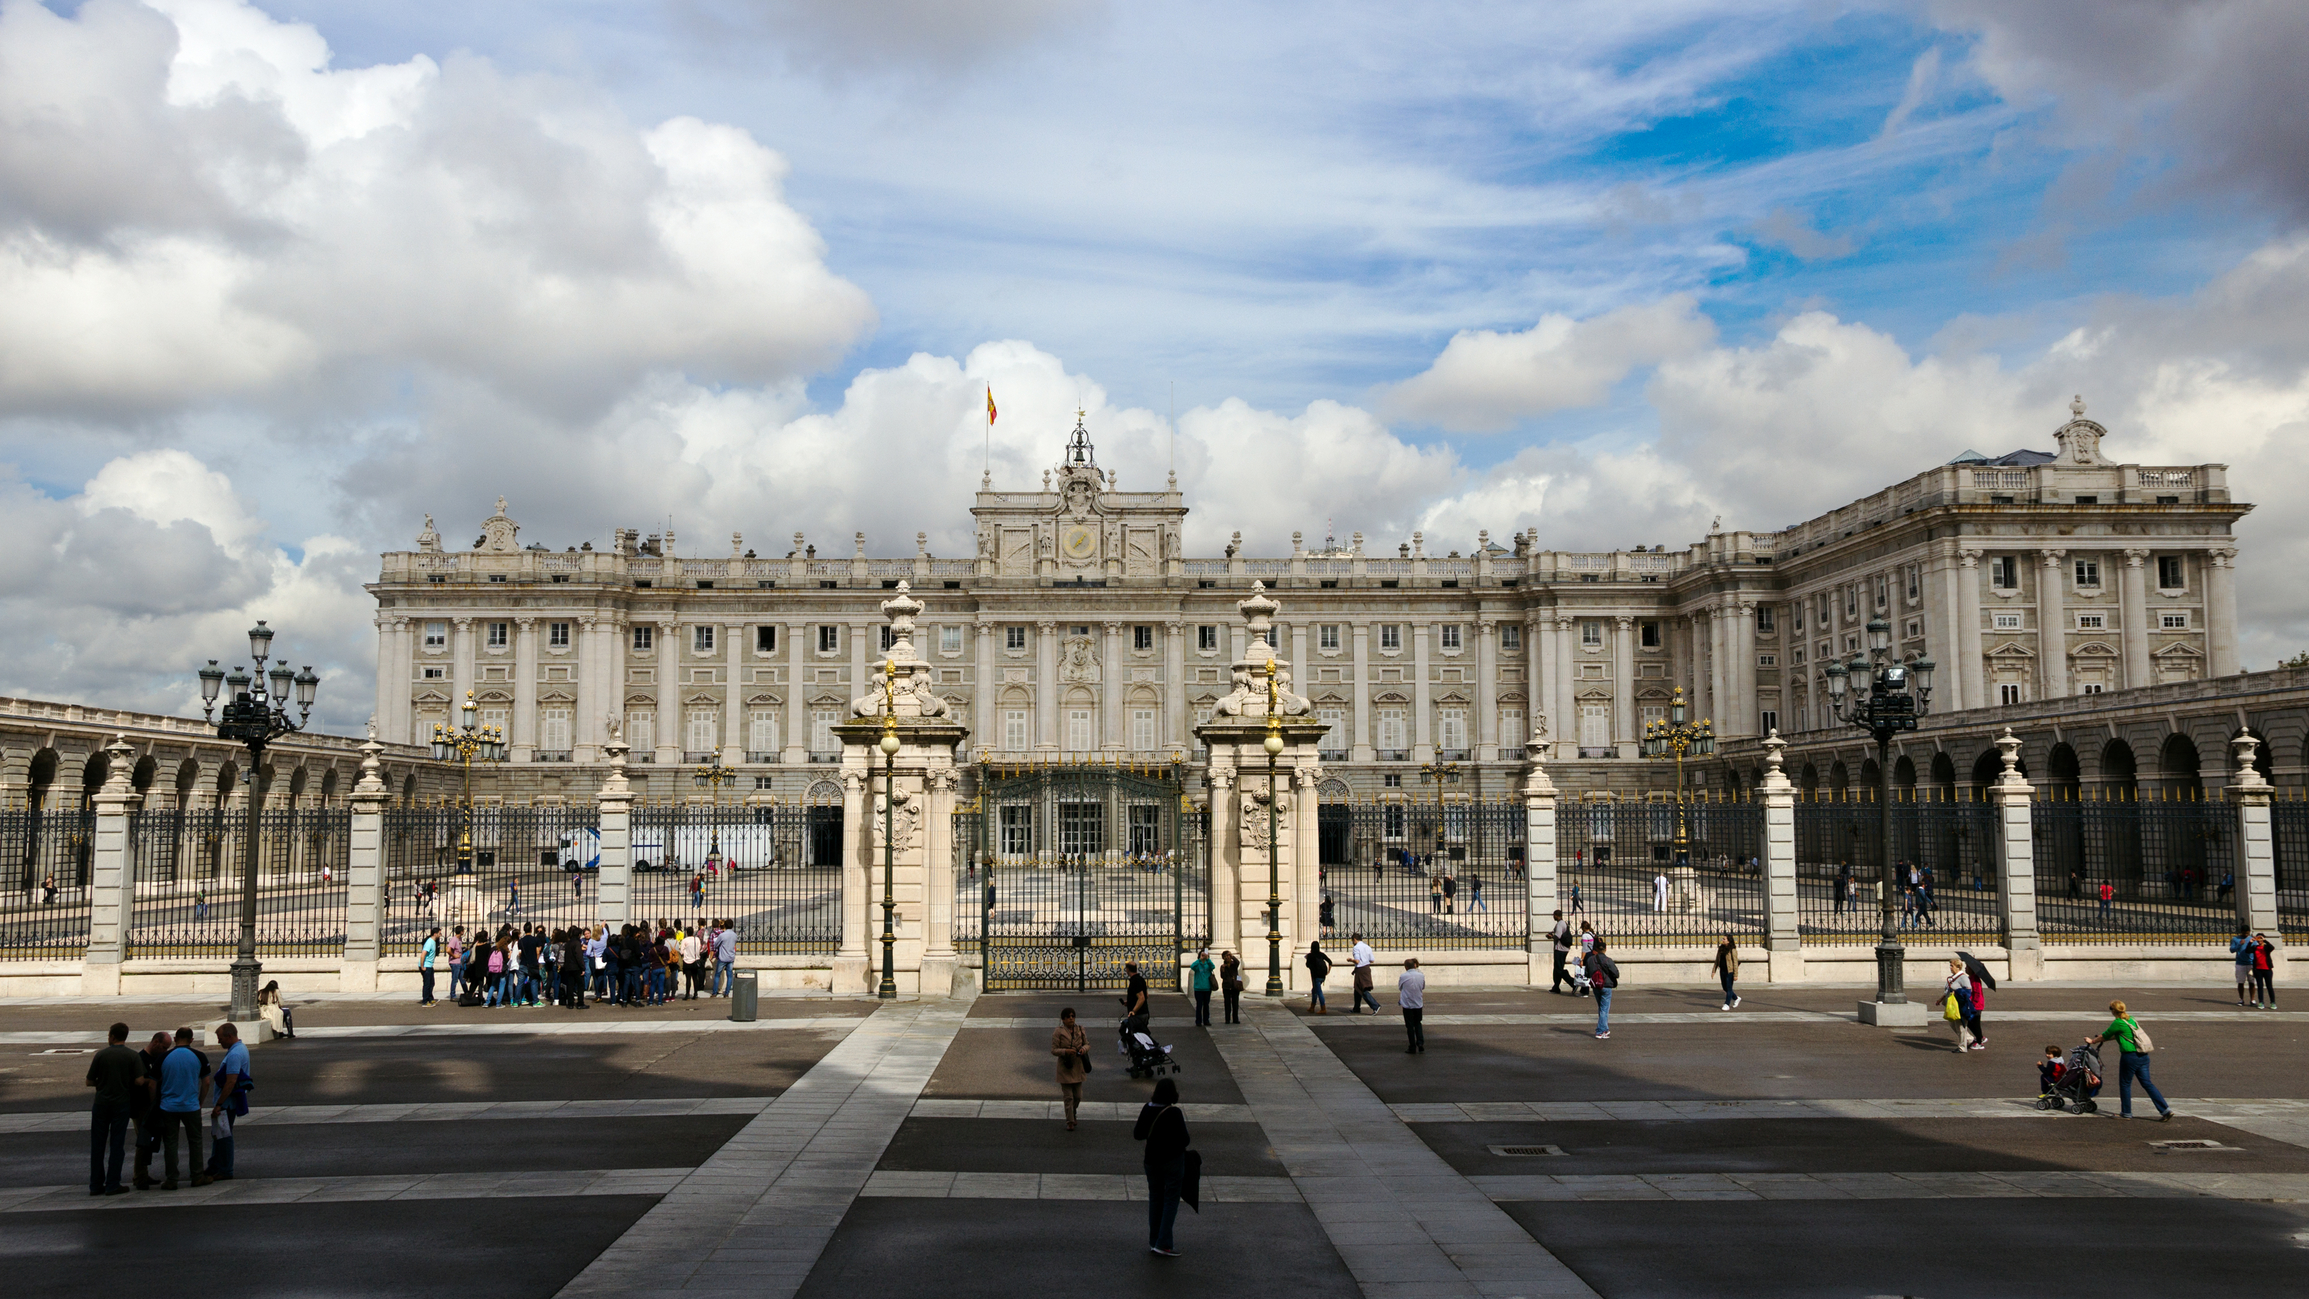 Palatul Regal al Spaniei din Madrid a avut în anul 2019, înainte de pandemie, peste 1,5 milioane de vizitatori, sursă foto dreamstime